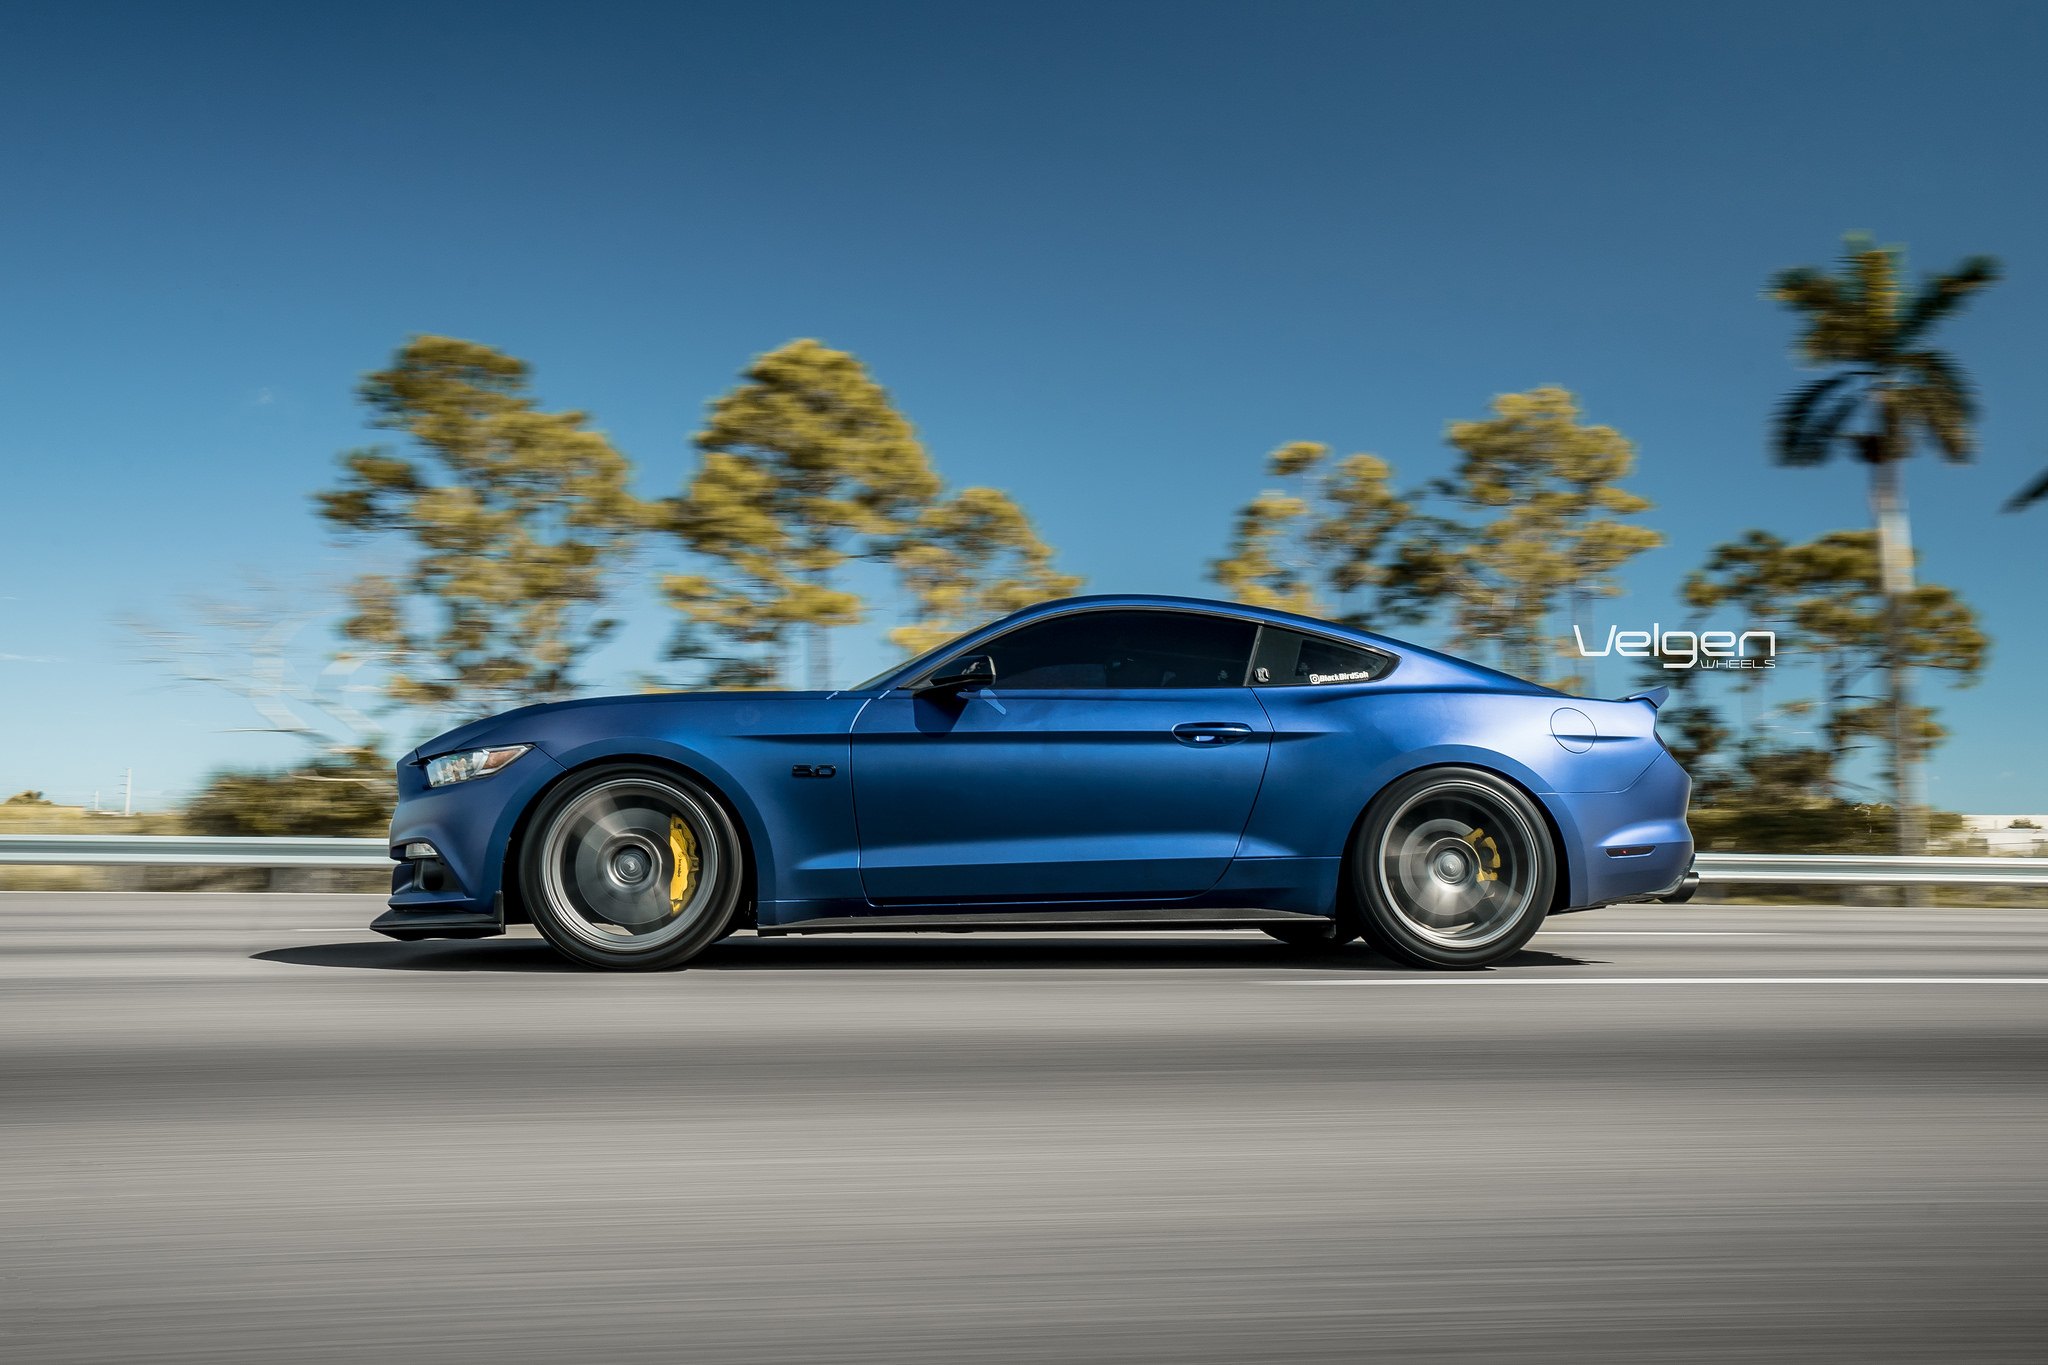 Blue Ford Mustang with Custom Velgen Rims - Photo by Velgen